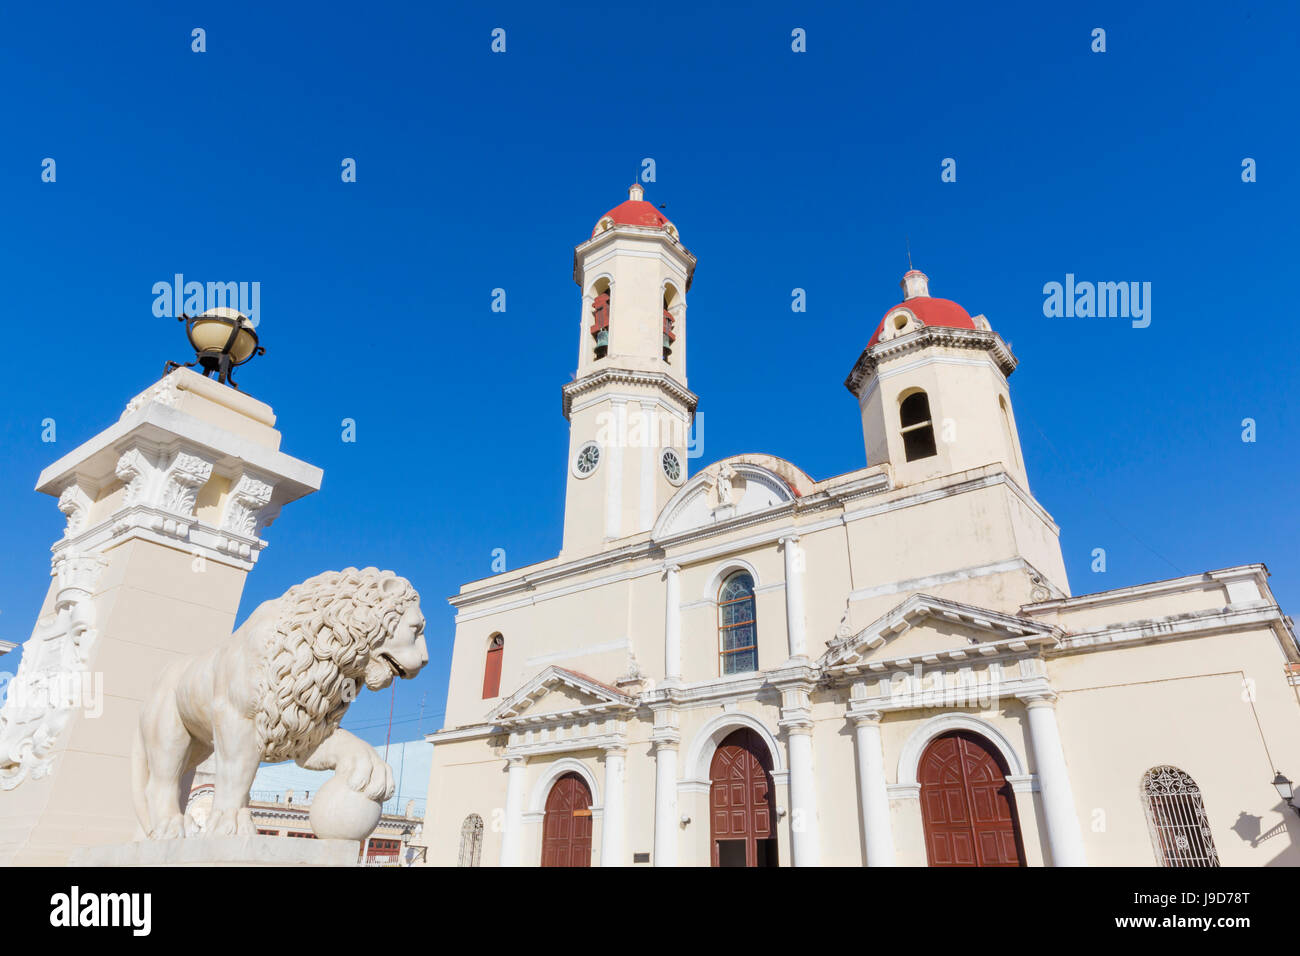 La Catedral de la Purisima Concepcion dans Plaza Jose Marti, Cienfuegos, Site du patrimoine mondial de l'UNESCO, Cuba, Antilles, Caraïbes Banque D'Images